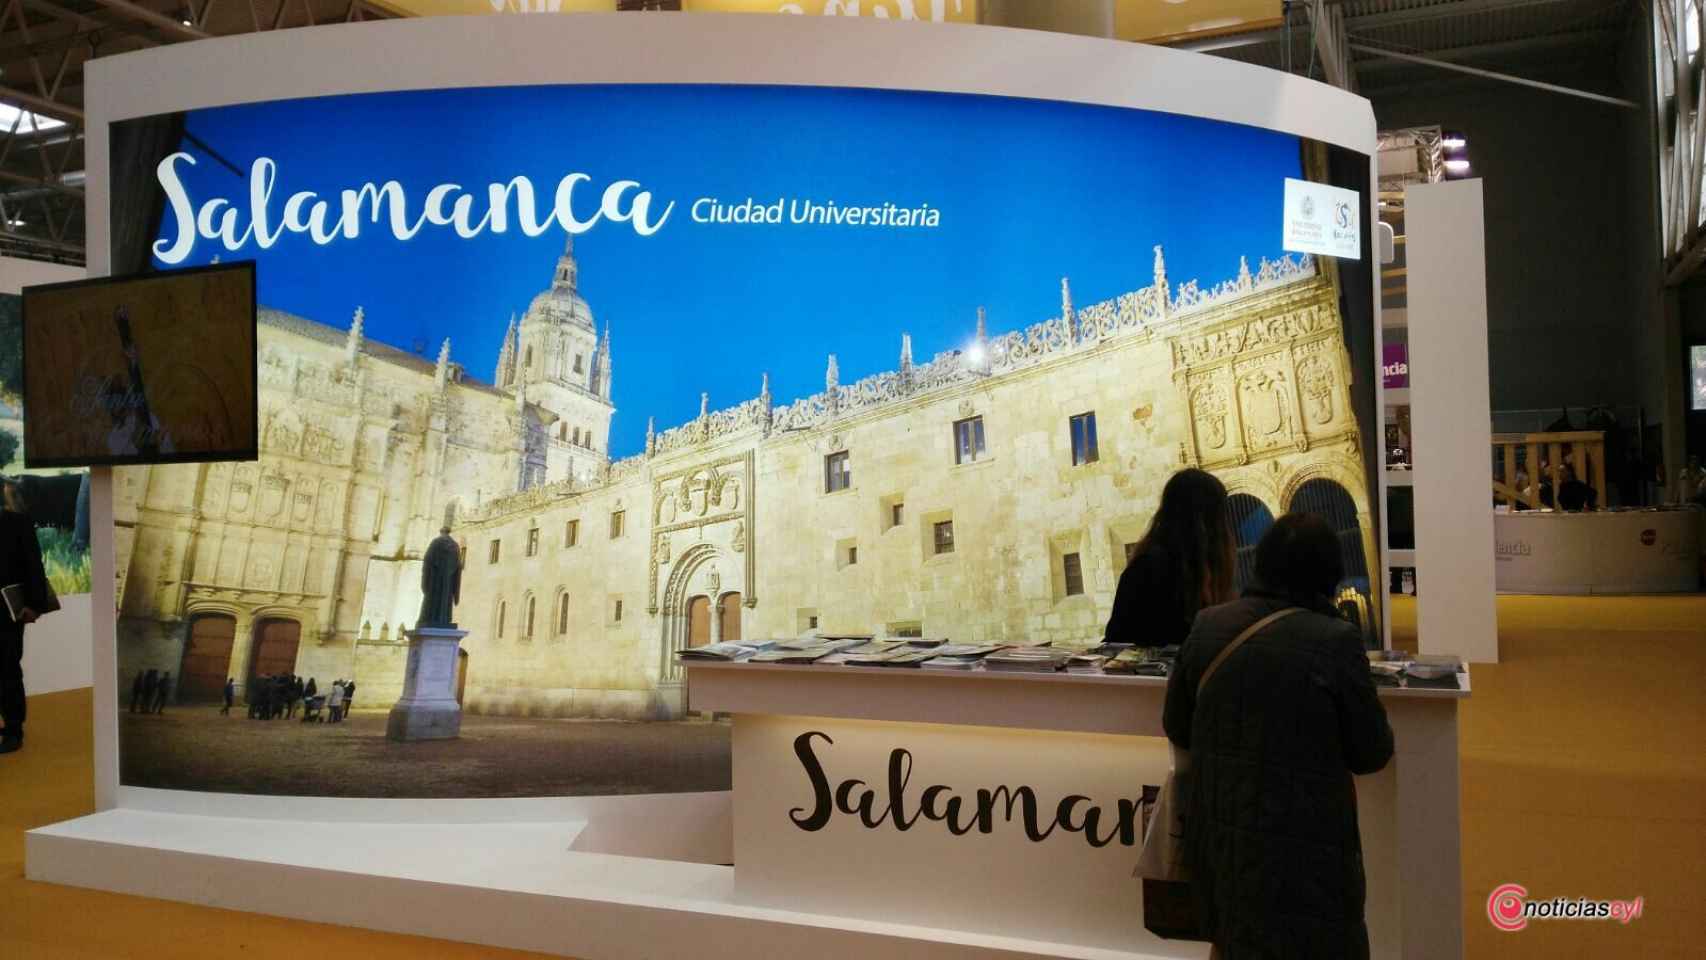 Salamanca Intur